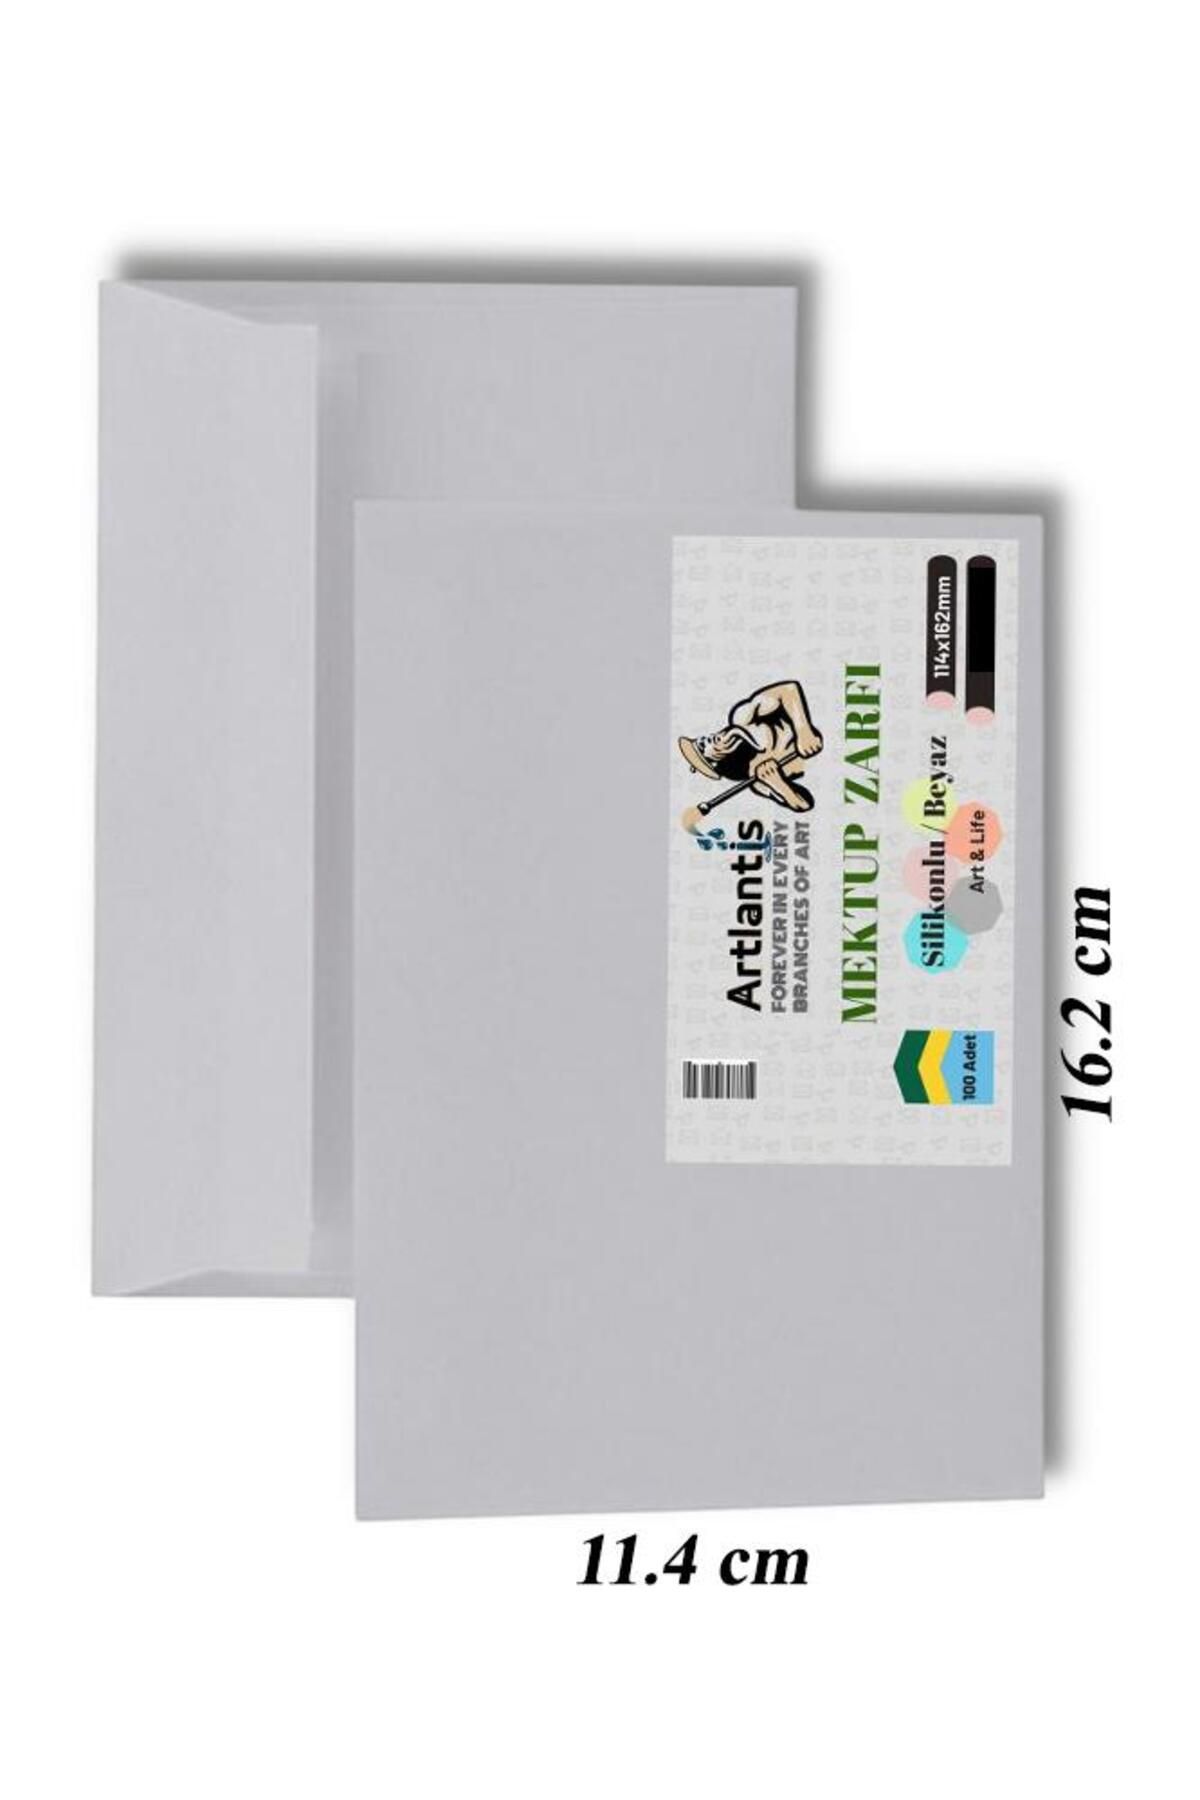 Artlantis Mektup Zarfı Silikonlu 114x162 Mm 100 Adet 1 Paket Artlantis Cırtlı Beyaz Zarf Takı Zarfı Düğün Para